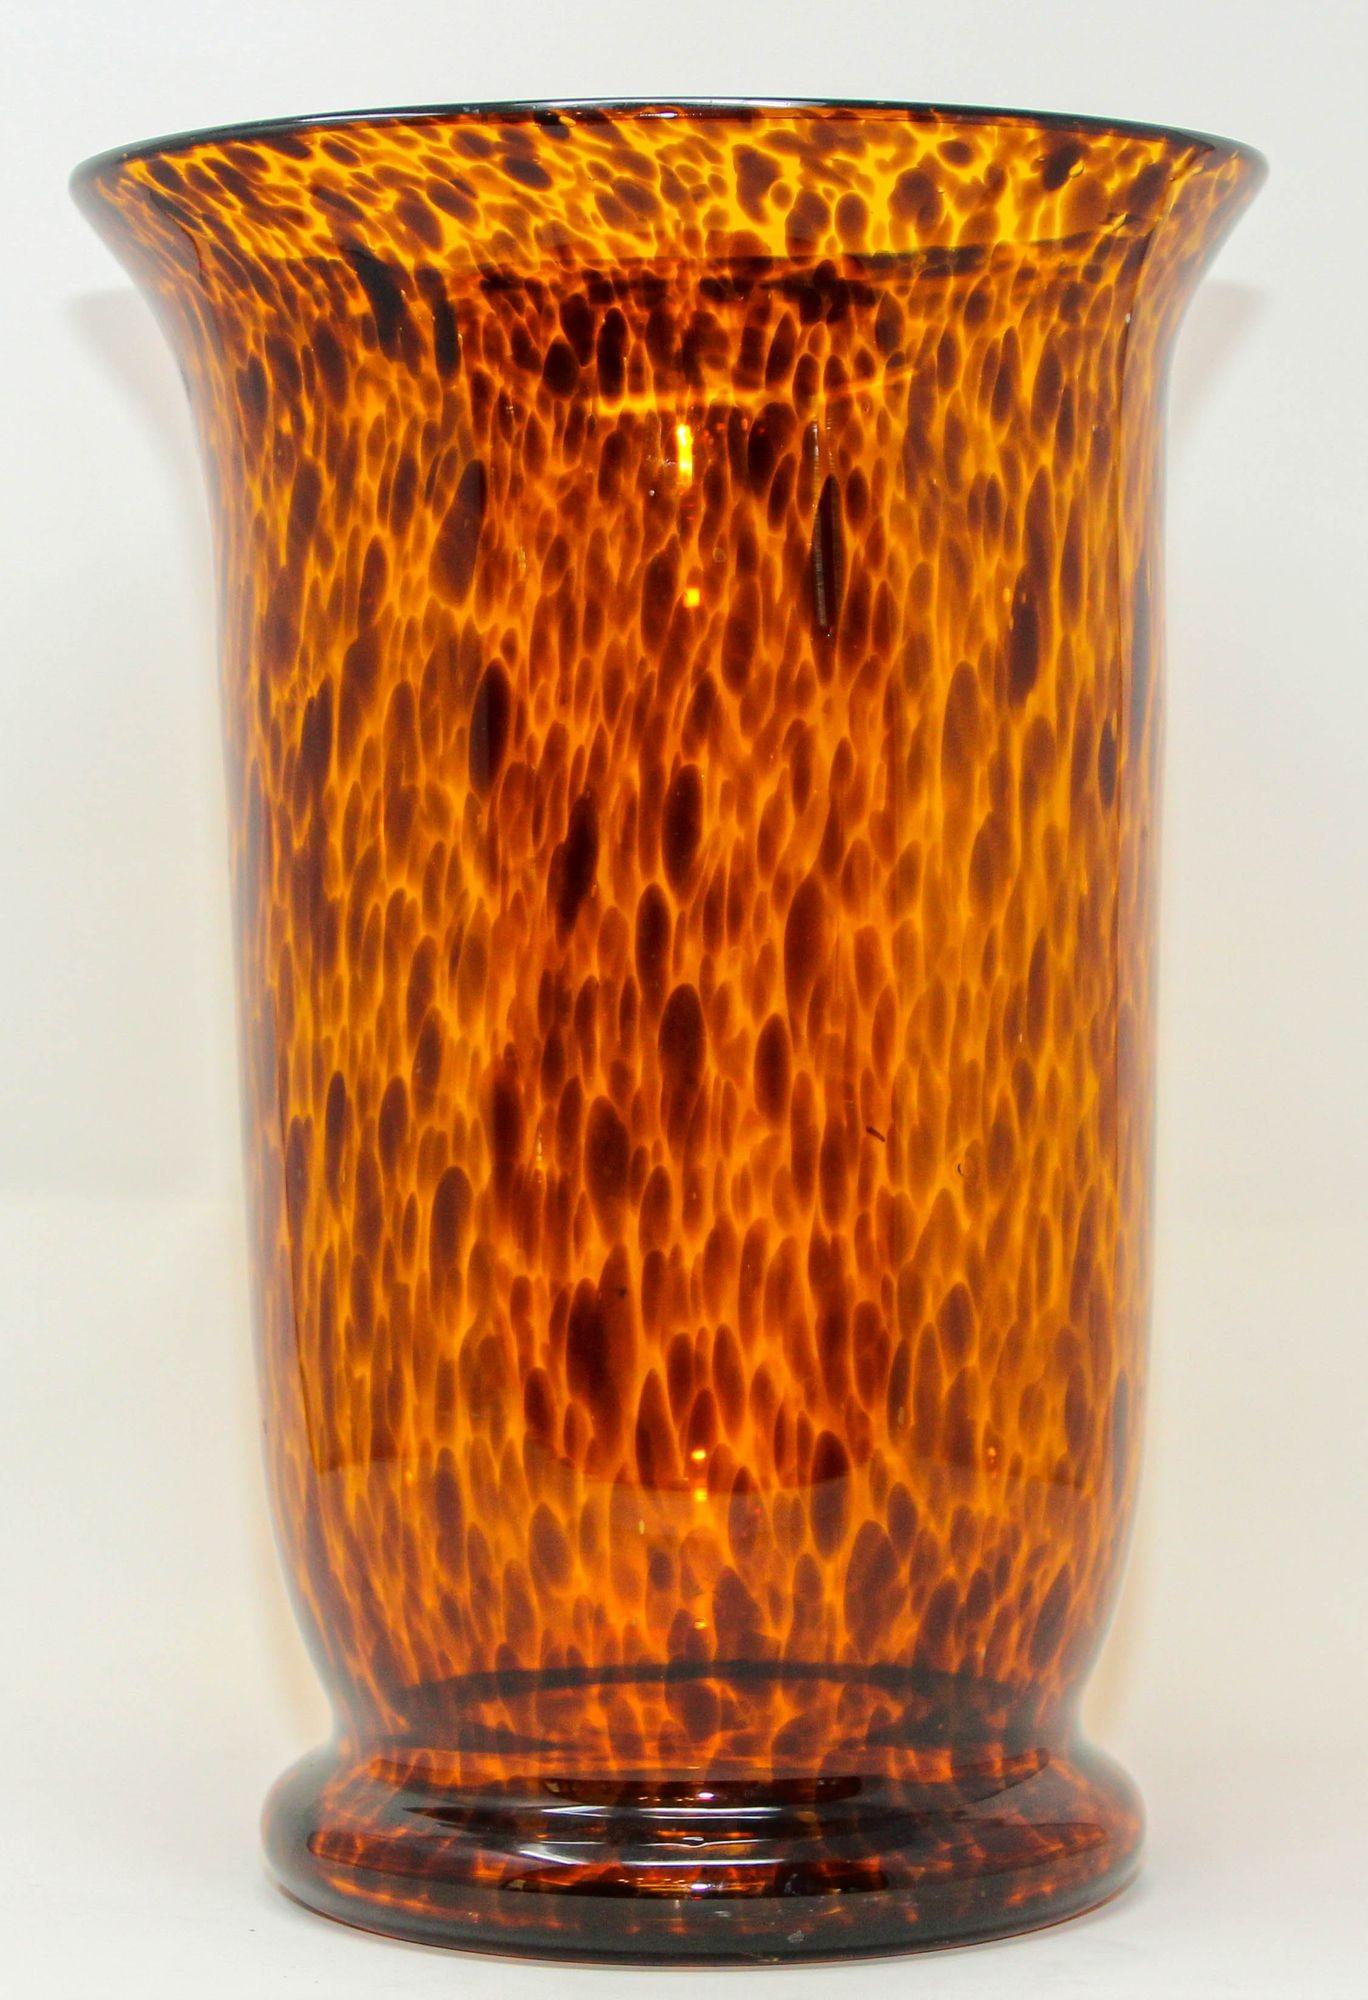 Vintage Faux Schildkrötenpanzer geblasen Kunst Glas Vase.
Moderne Vase aus mundgeblasenem Glas im Stil eines Schildkrötenpanzers aus der Mitte des letzten Jahrhunderts.
Das Schildkrötenmuster hat eine schöne tiefe Topas-, Braun-, Karamell- und